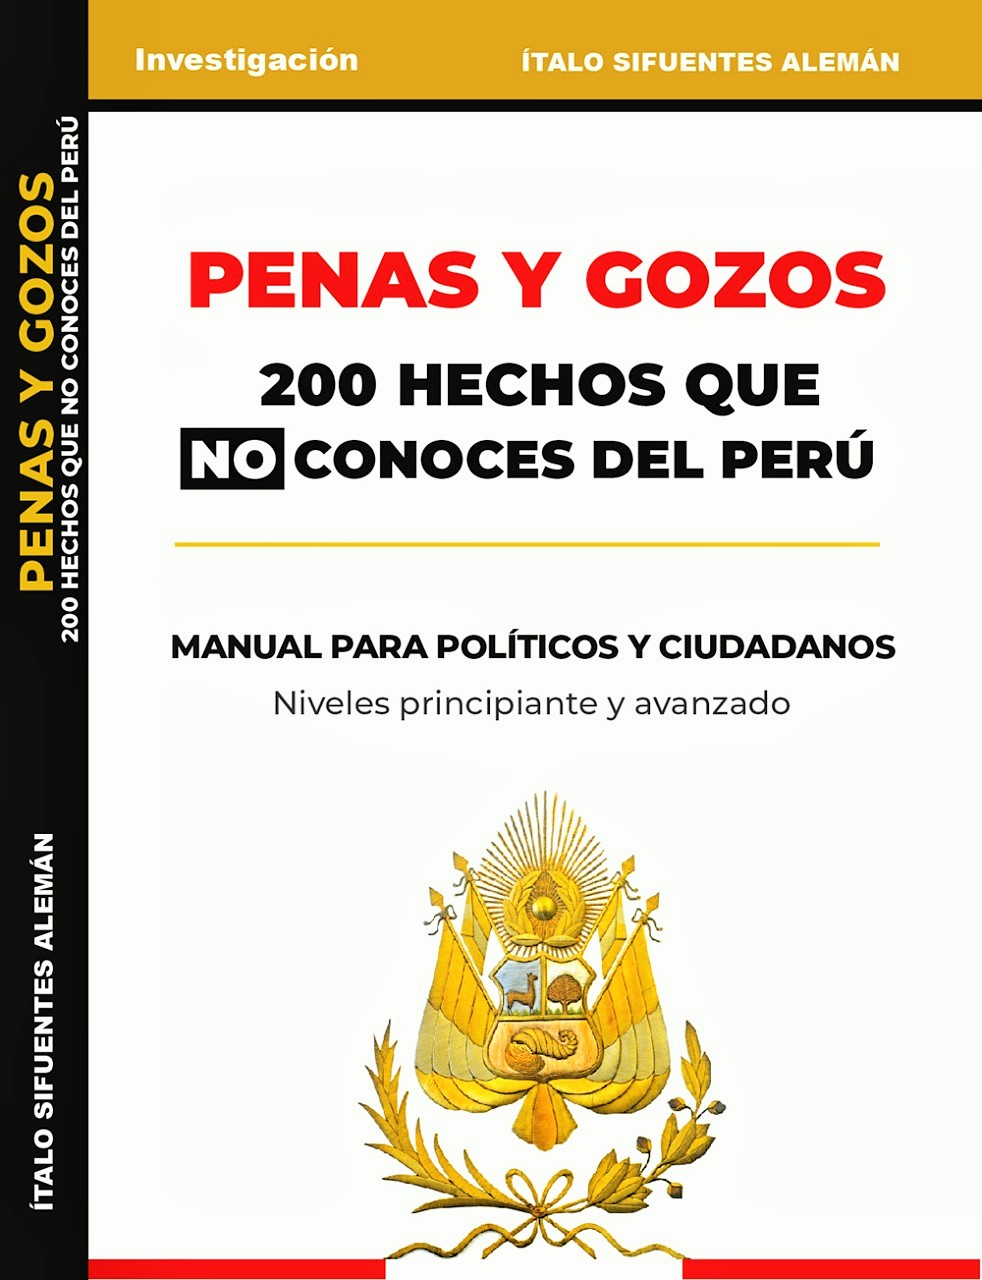 “Penas y gozos. 200 hechos que no conoces del Perú. Manual para políticos y ciudadanos”